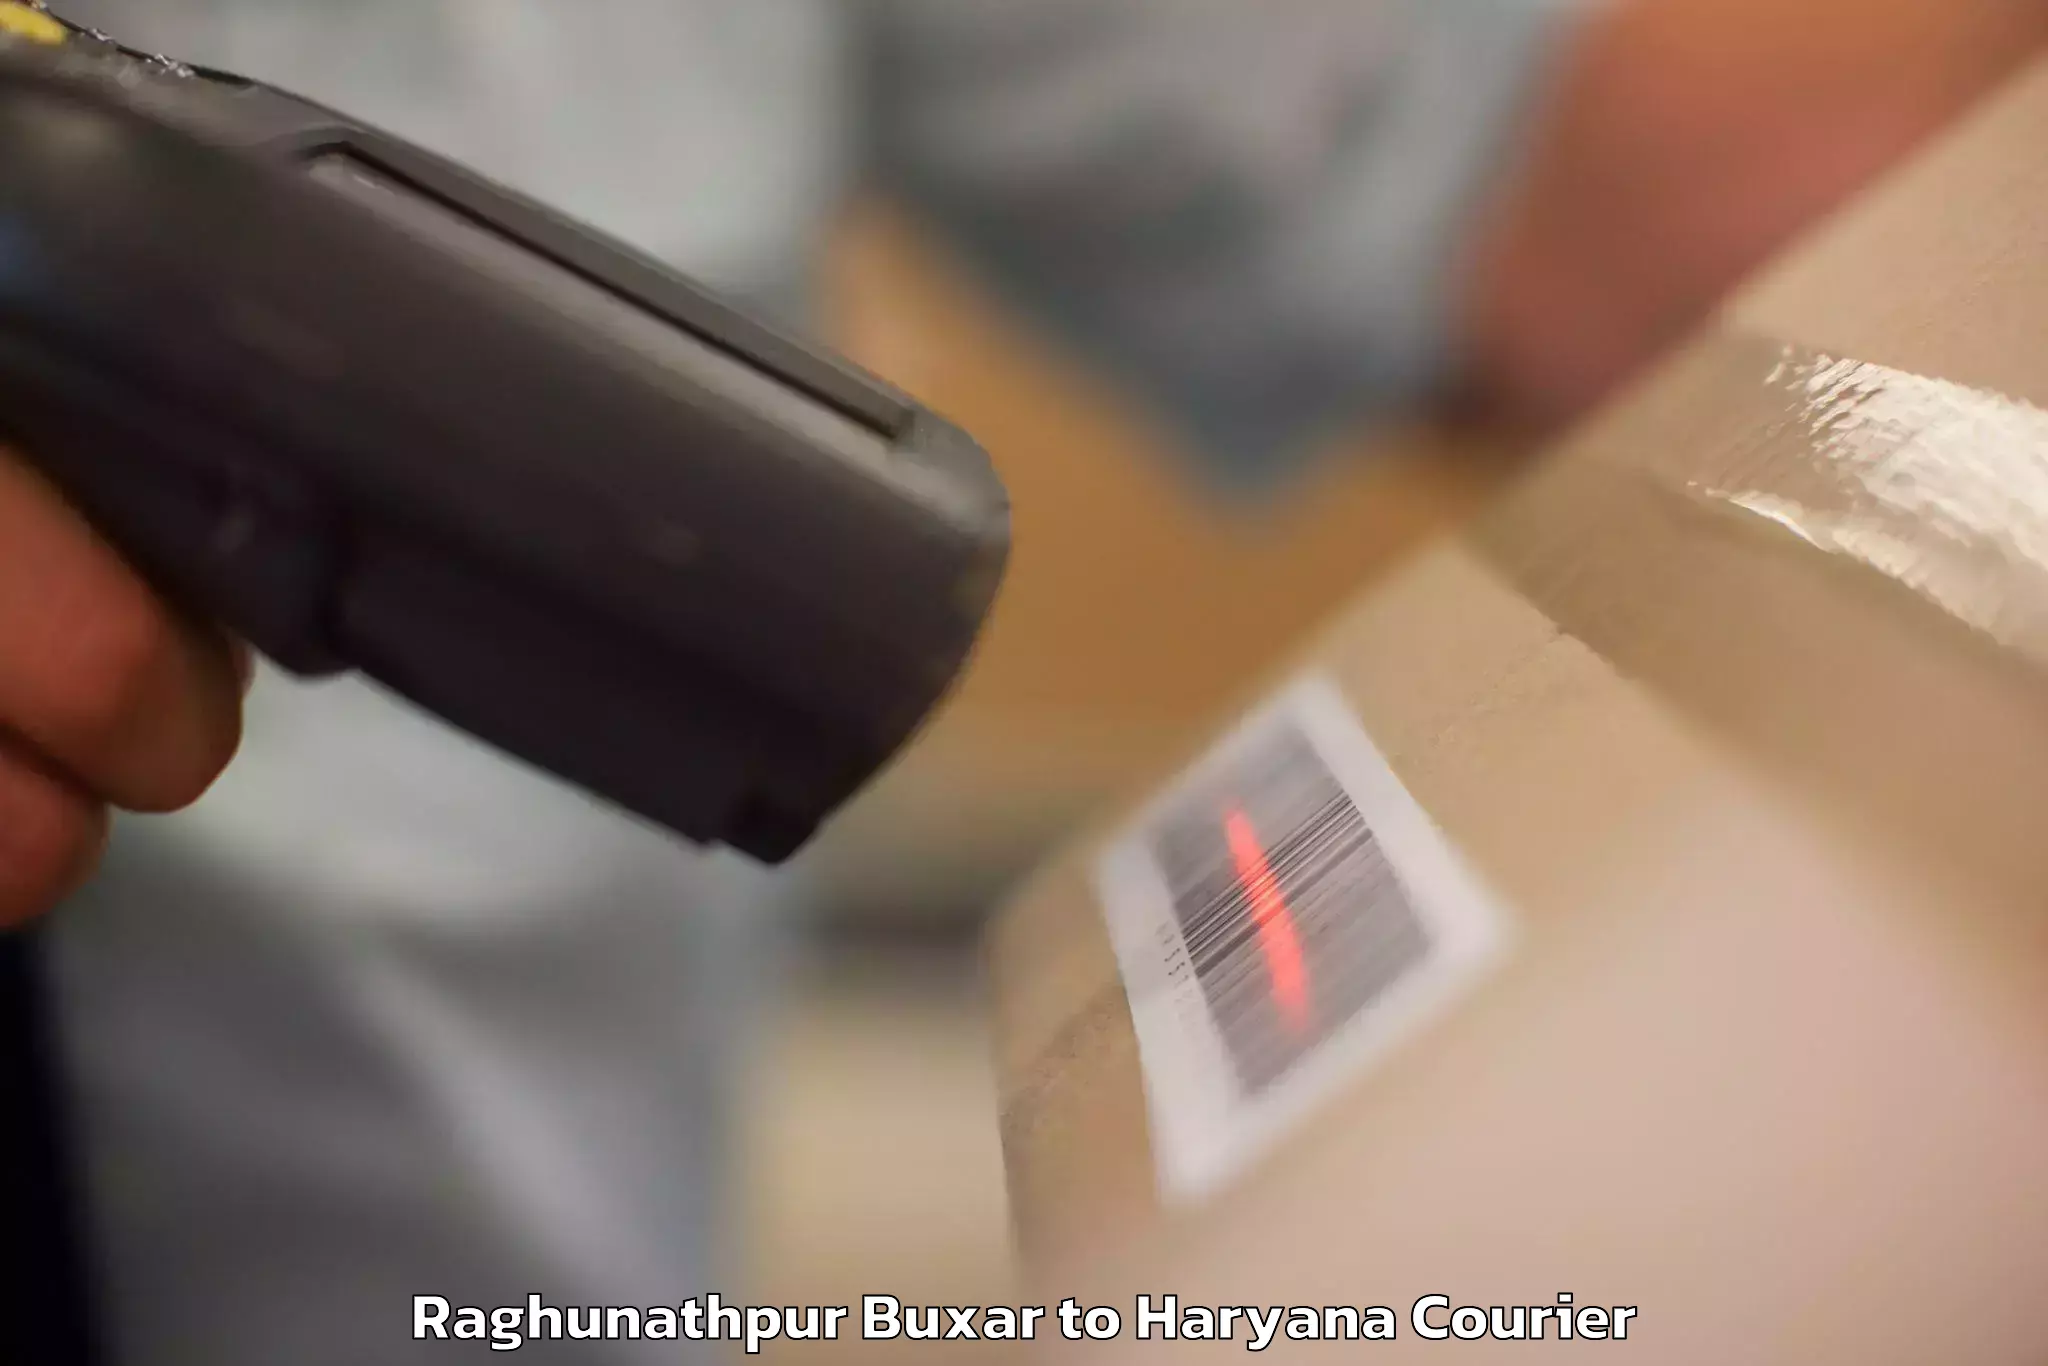 Digital baggage courier Raghunathpur Buxar to Ambala